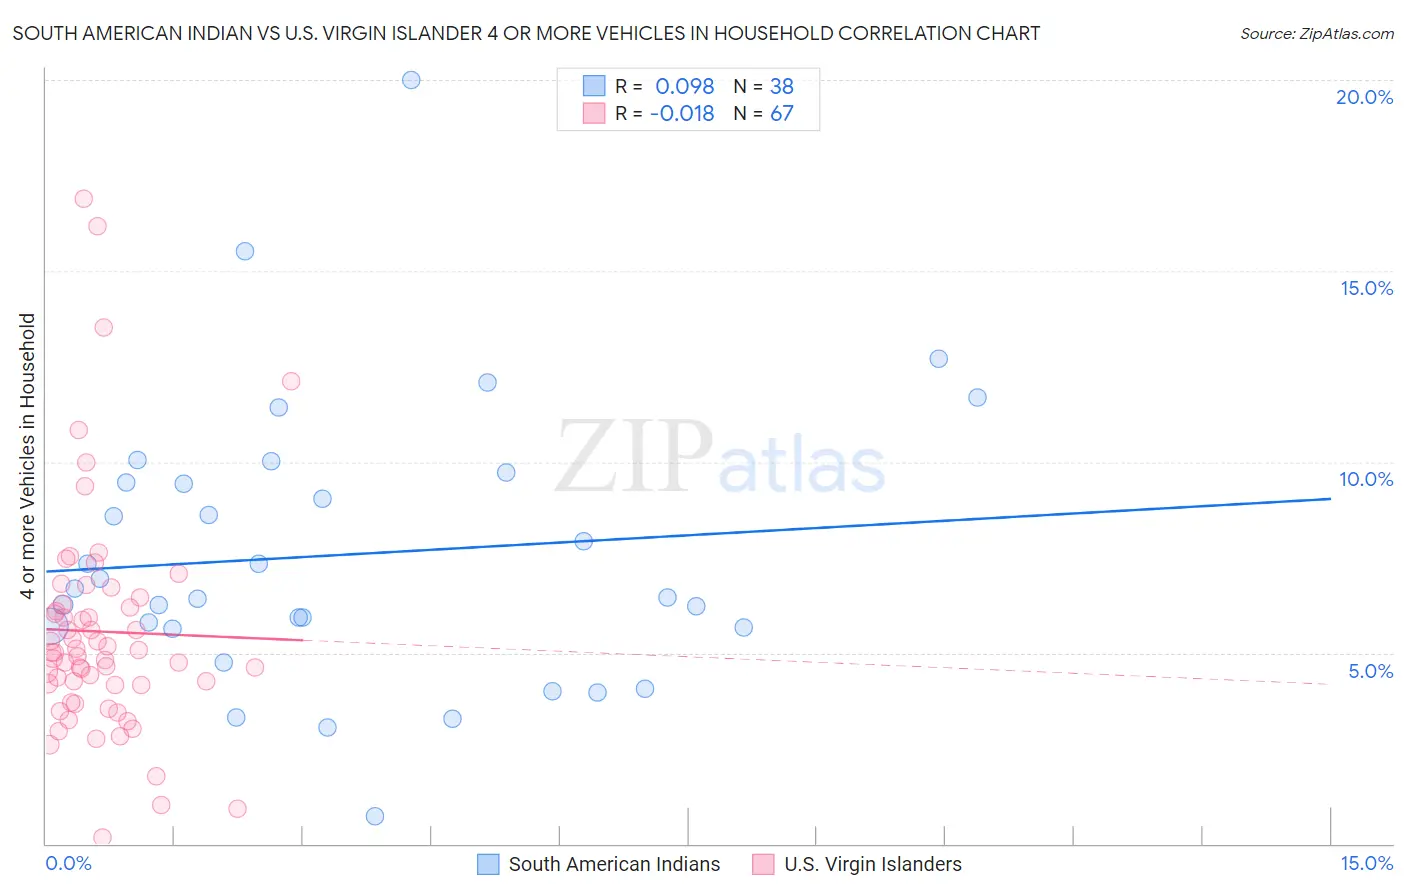 South American Indian vs U.S. Virgin Islander 4 or more Vehicles in Household